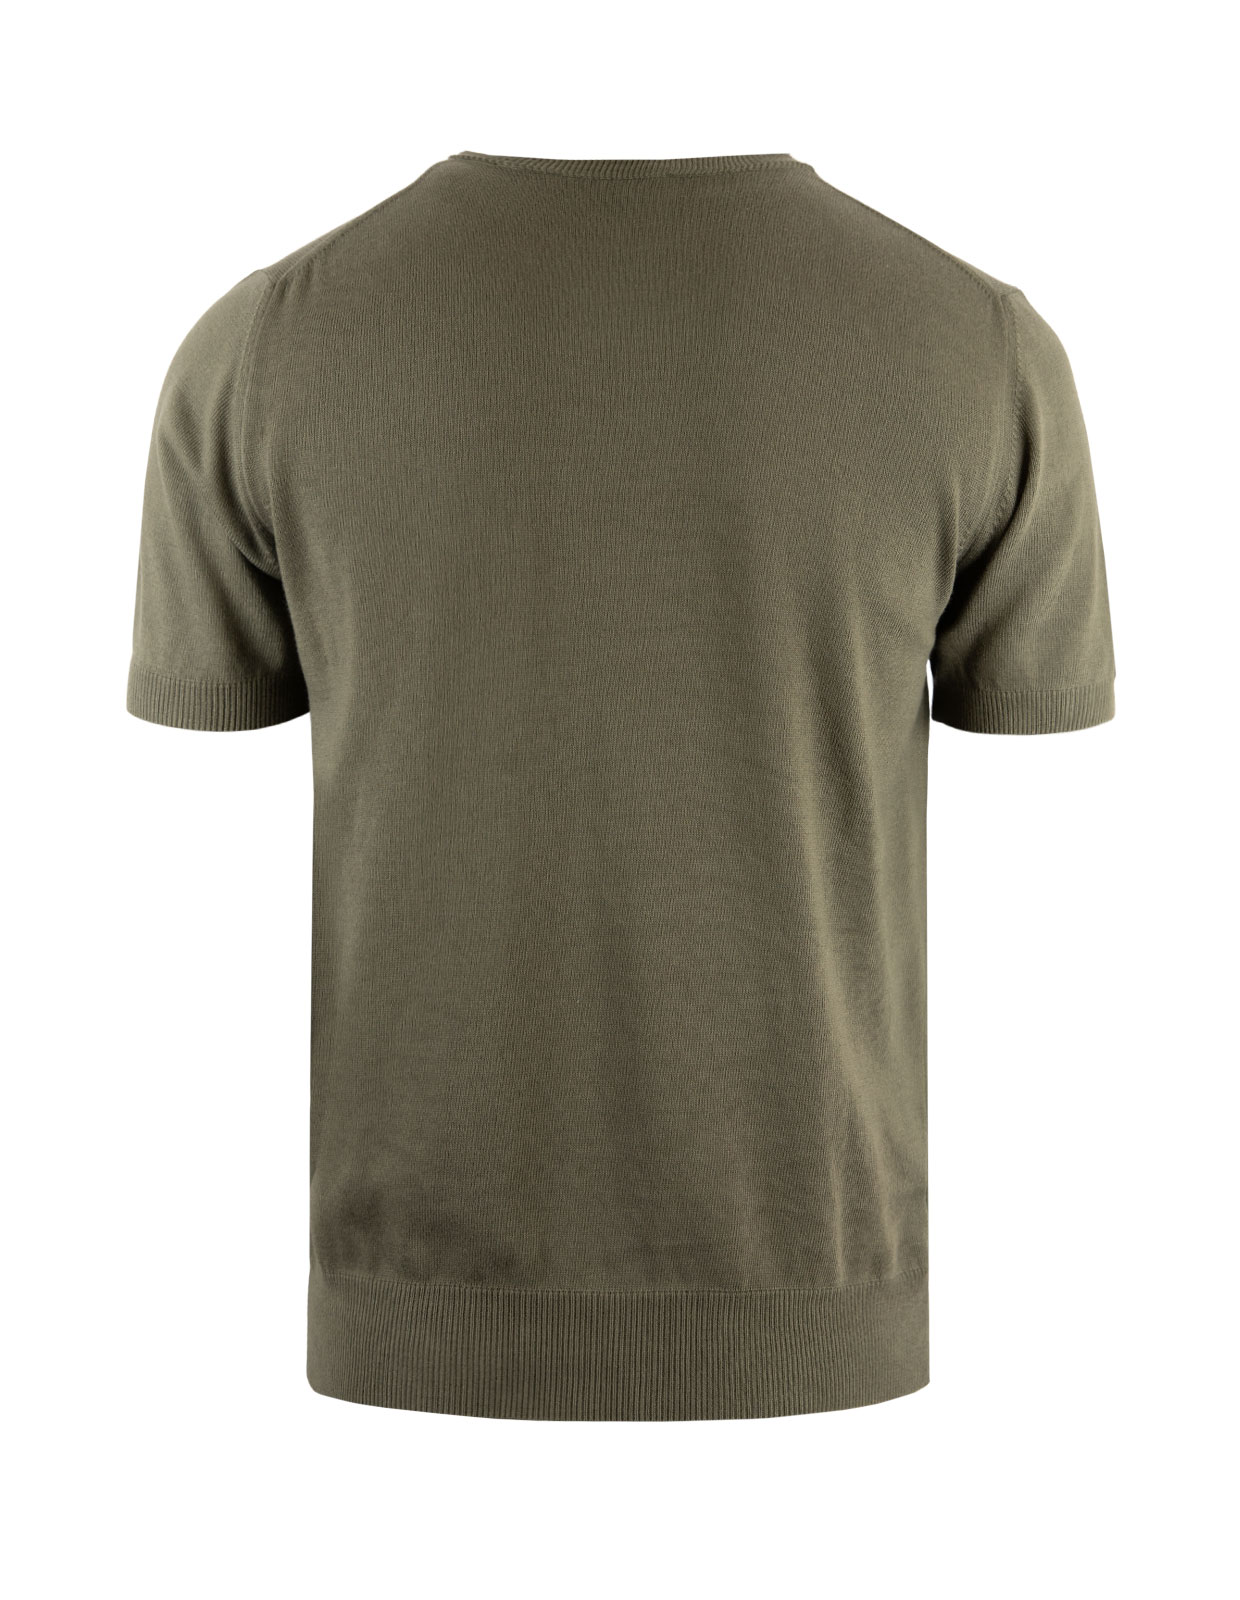 T-shirt Finstickad Bomull Militärgrön Stl M